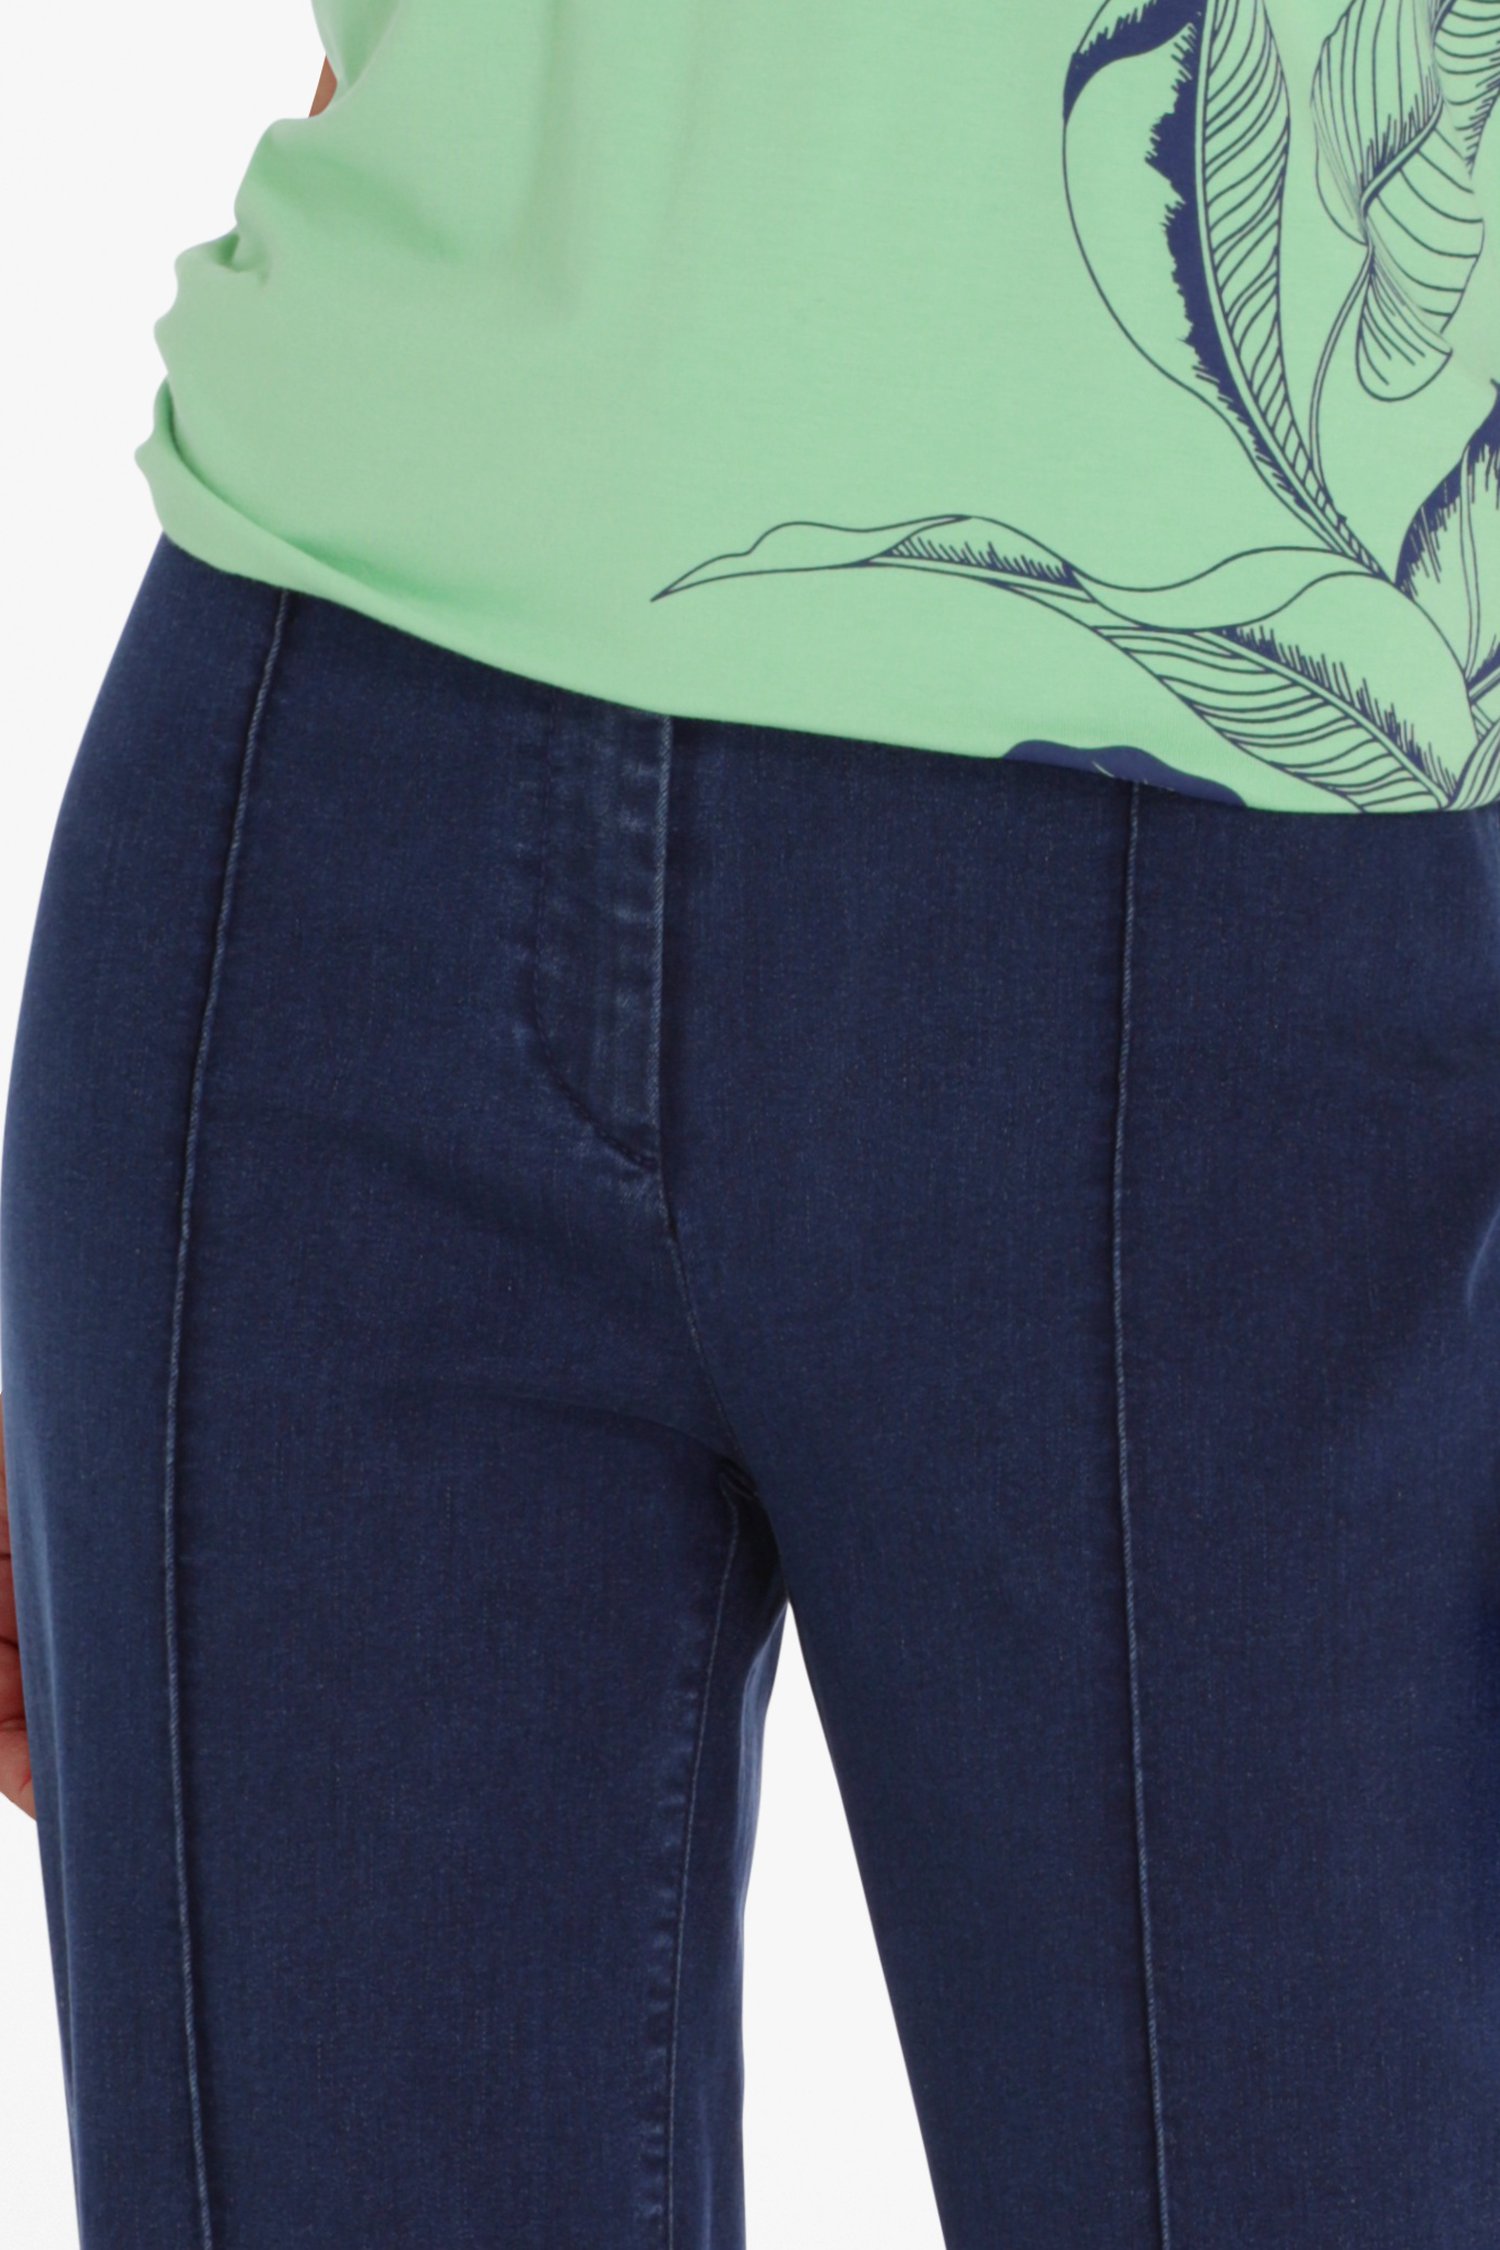 Verzoenen Komkommer duizelig Blauwe broek met jeans look - straight fit van Claude Arielle | 5932255 | e5